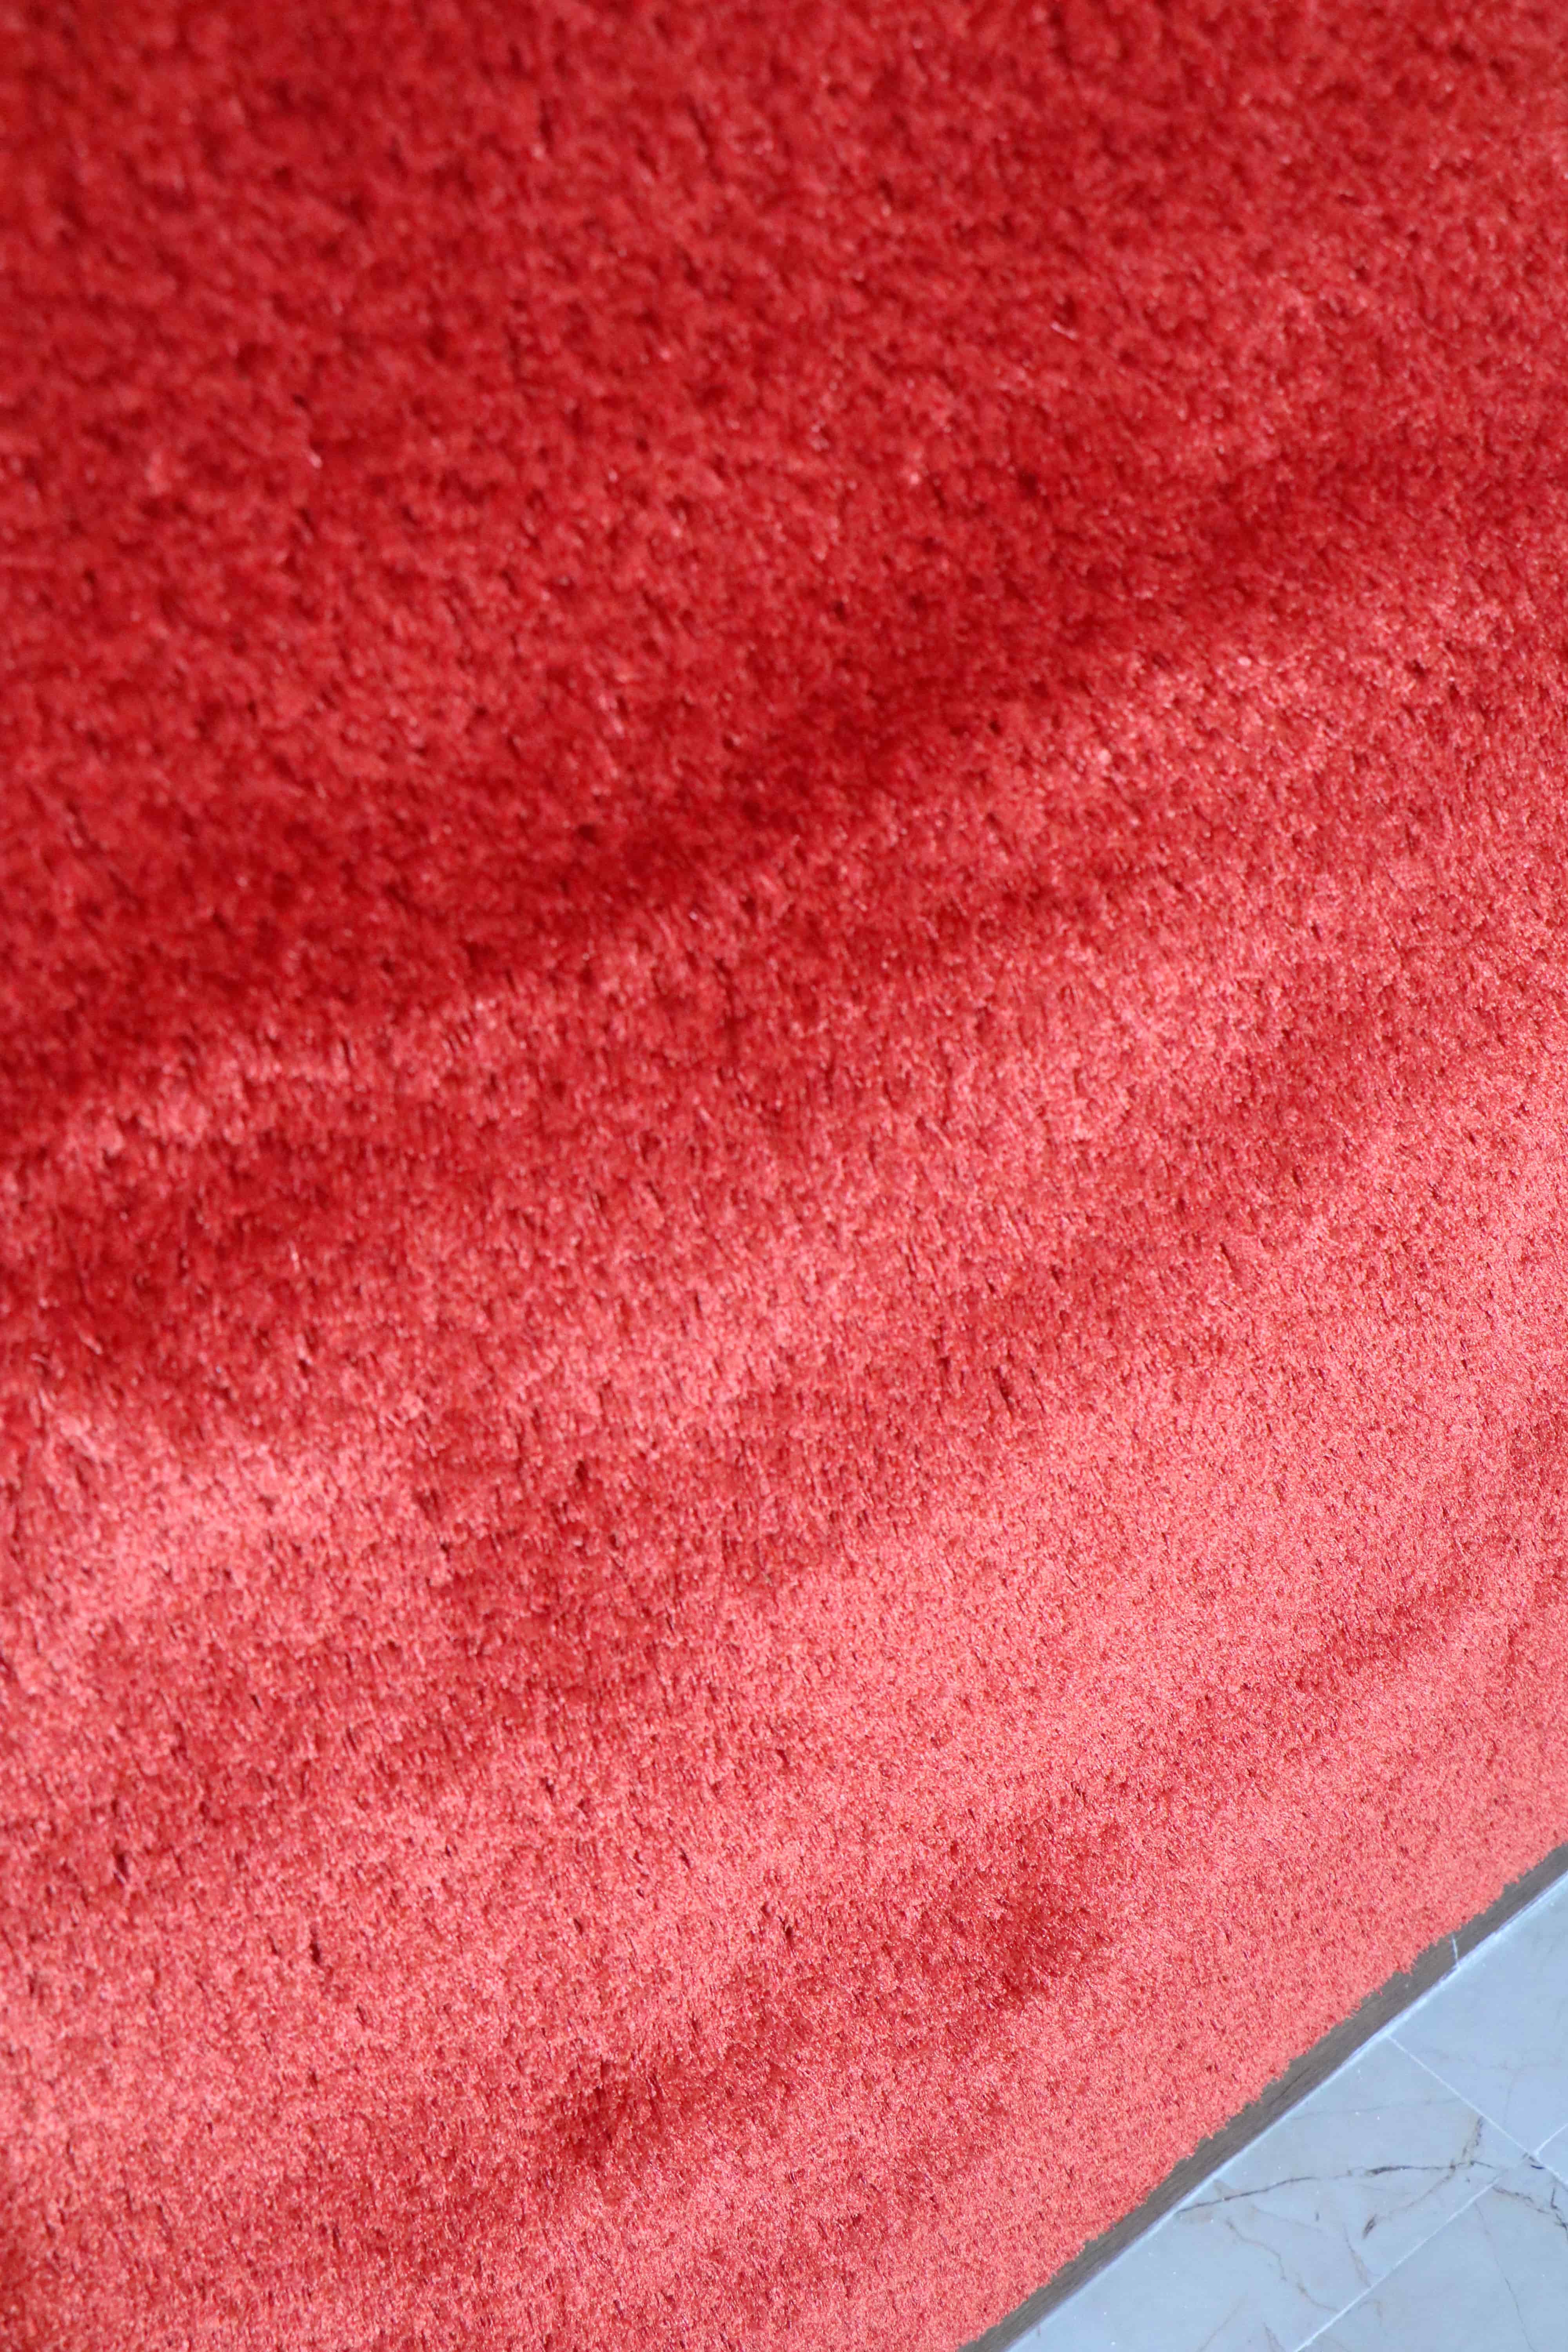 فرش شگی پرز بلند کد 5013 زمینه قرمز